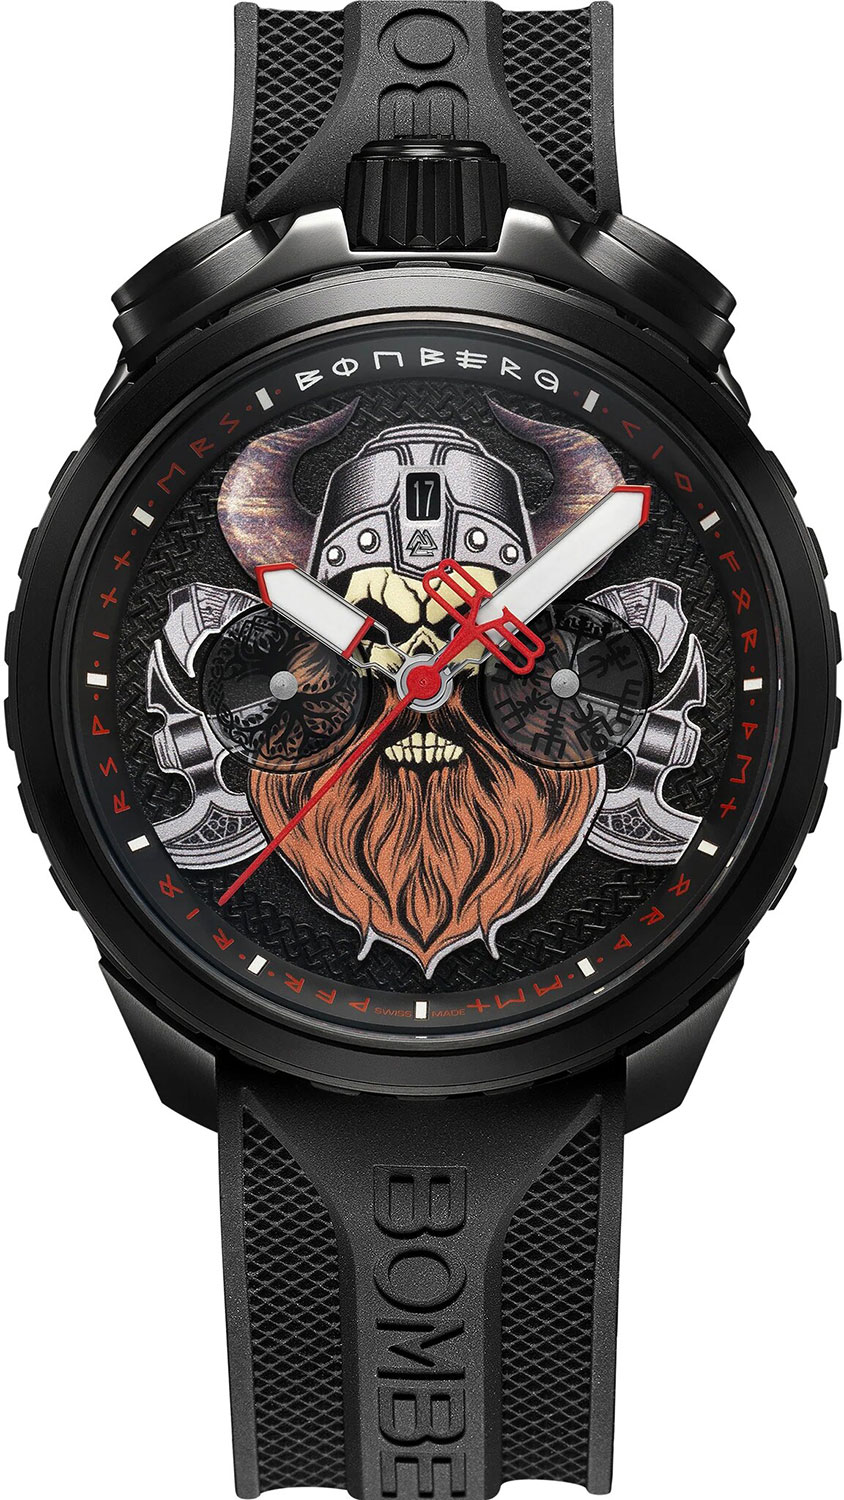 Швейцарские наручные часы Bomberg BS45CHPBA.066-1.12 с хронографом